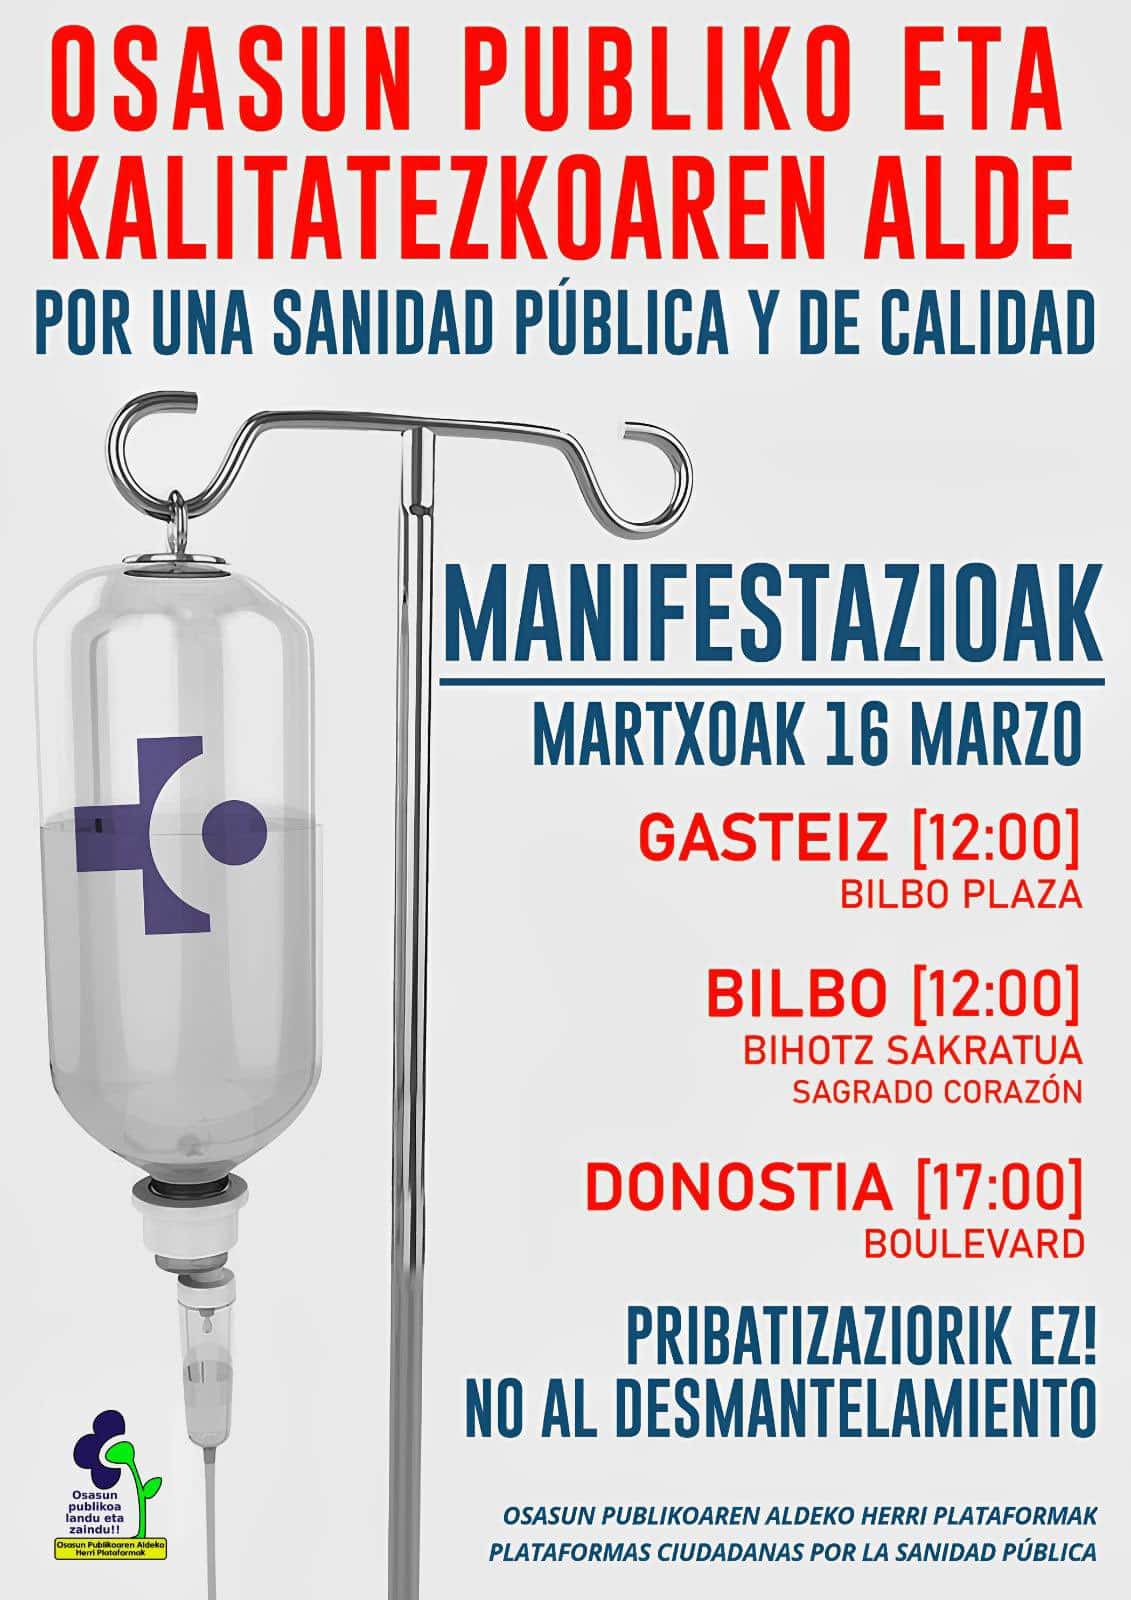 OPA Manifa marzo Cartel - Movilizaciones contra el "desmantelamiento" de Osakidetza este sábado en las 3 capitales vascas